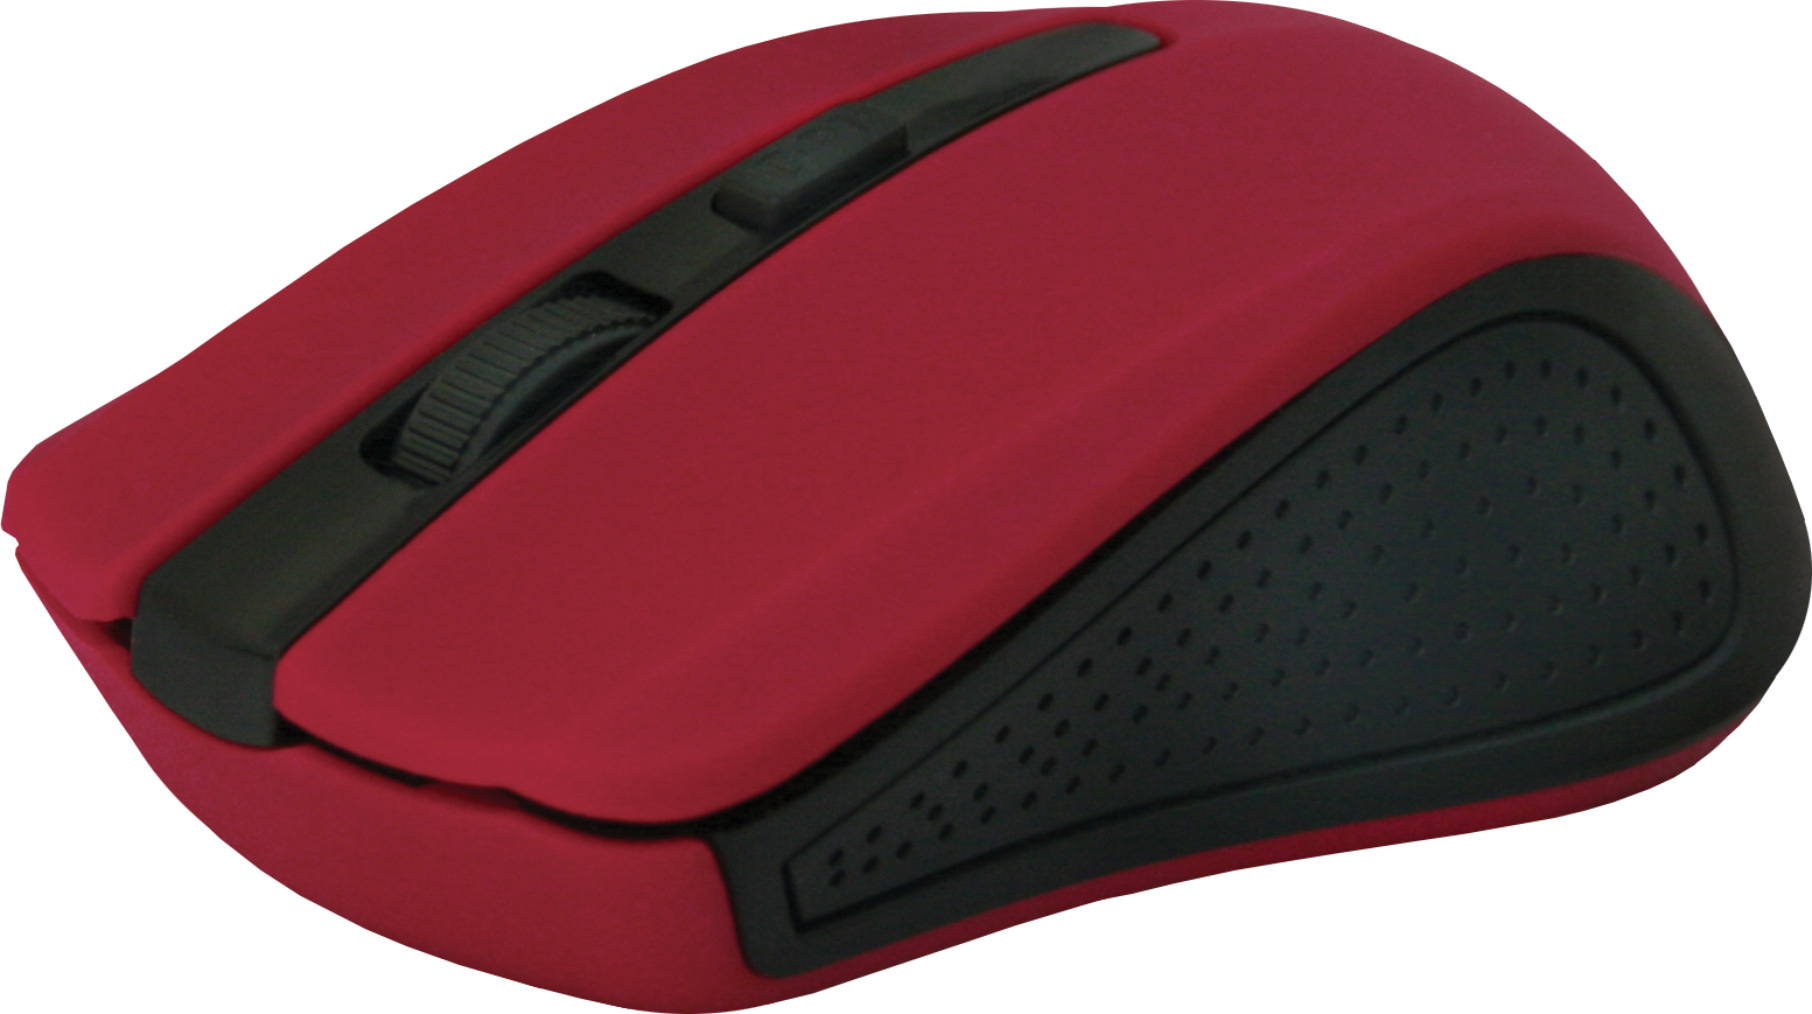 Беспроводная оптическая мышь Defender Accura MM-935 красный,4 кнопки,800-1600 dpi